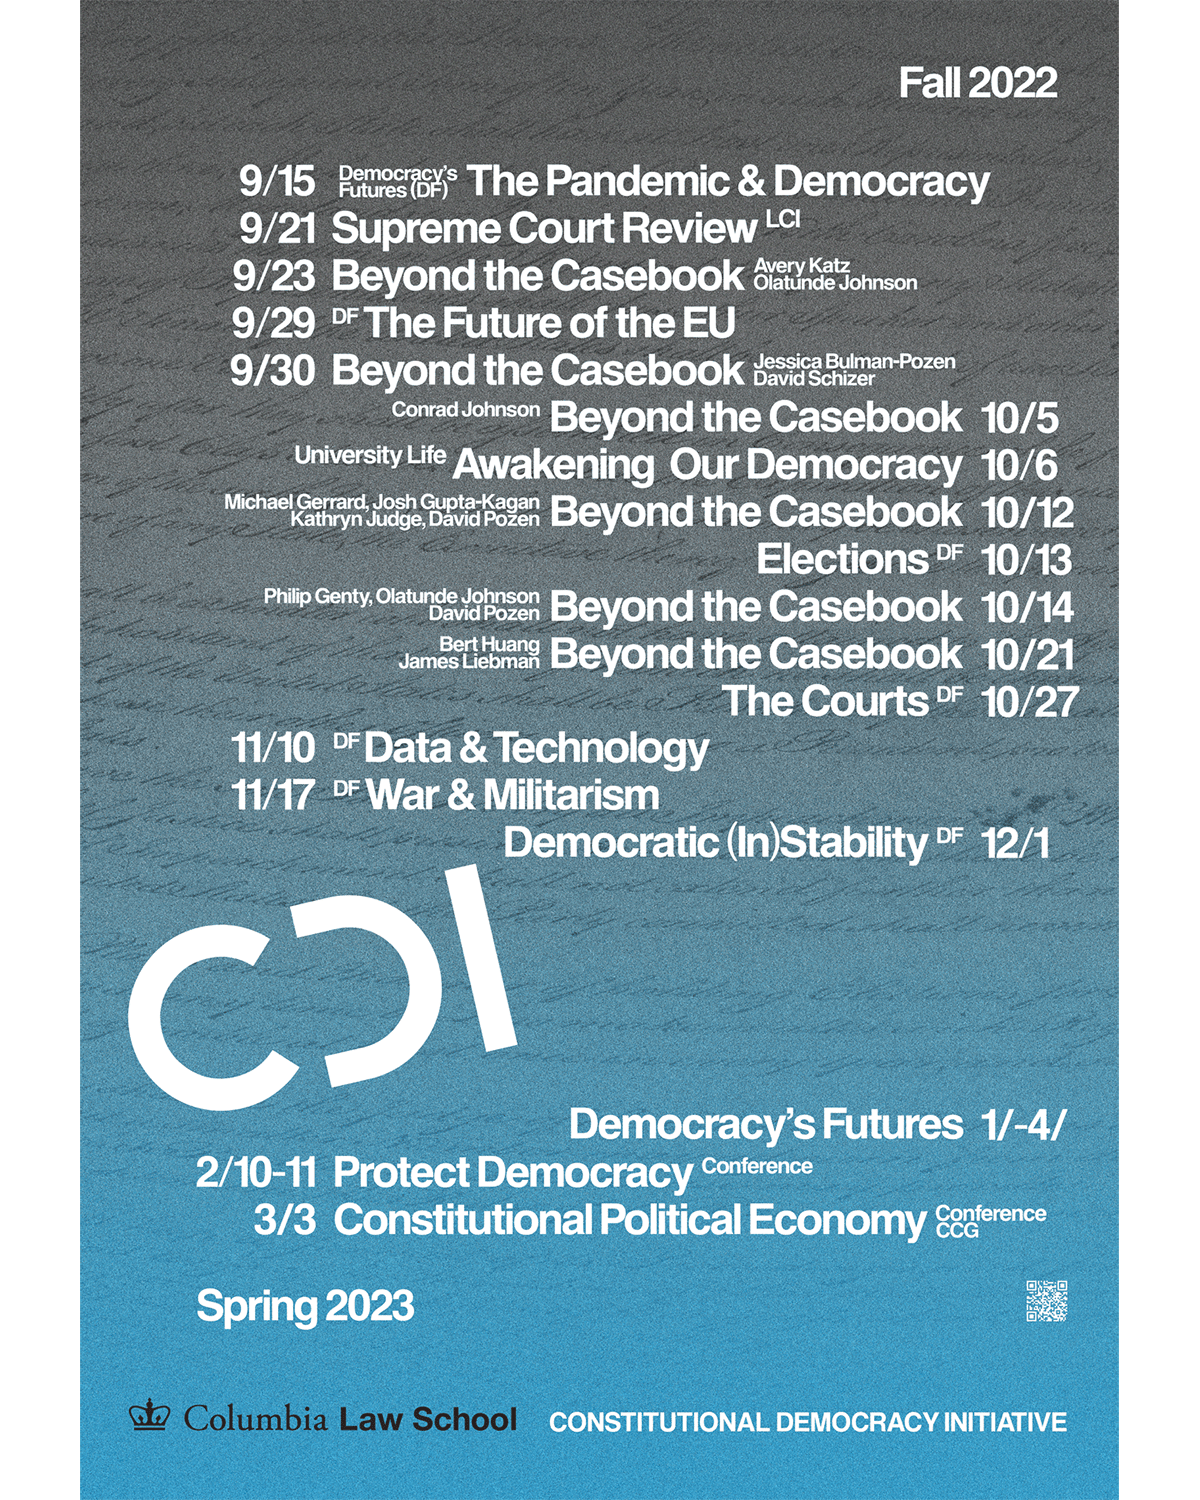 CDI Fall 2022 Calendar